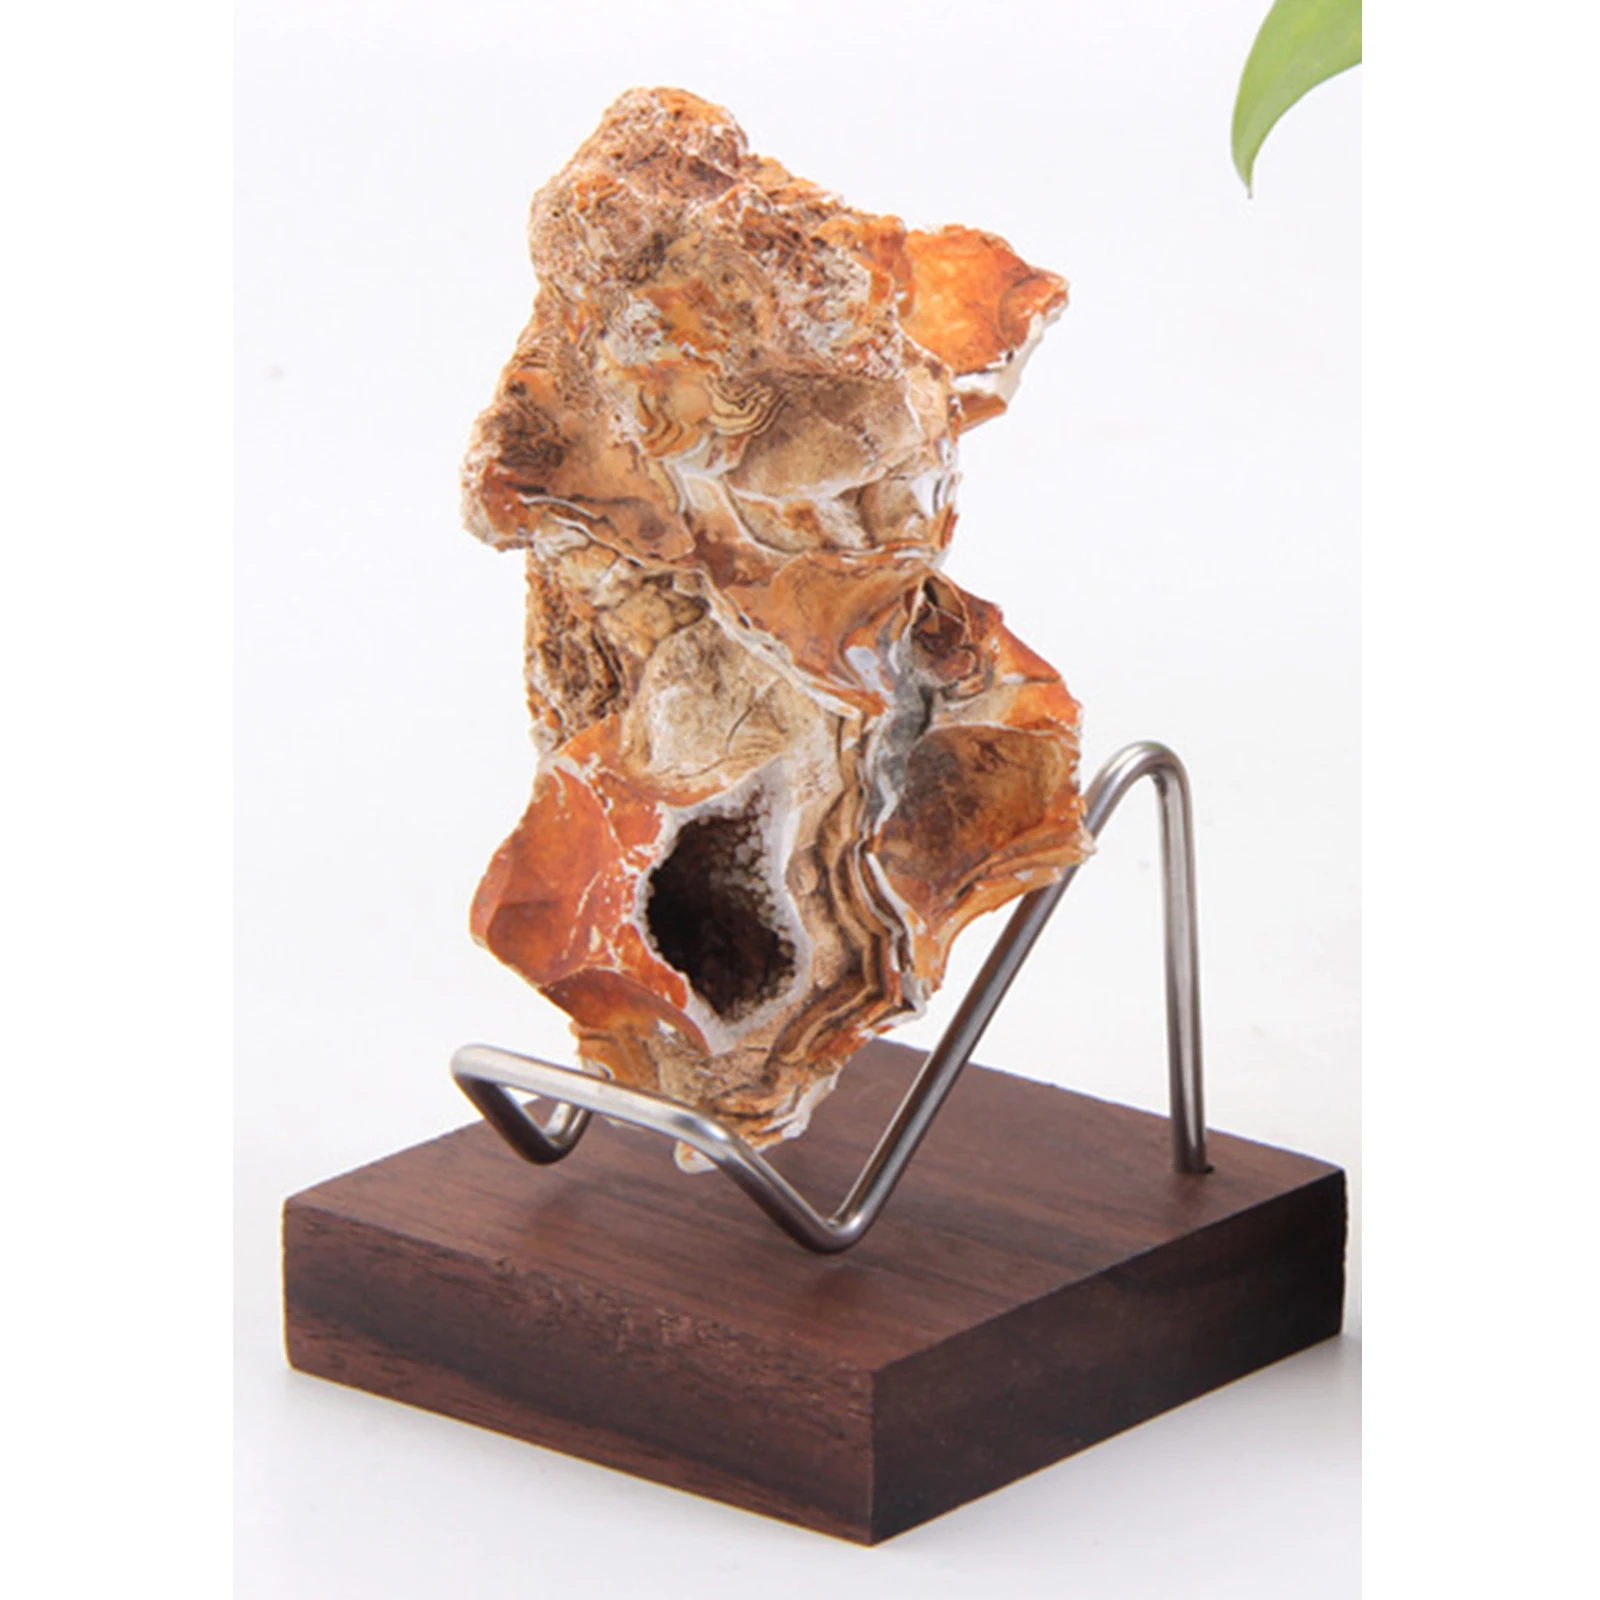 Stones Crystal cluster stand base home decoration Mineral specimen desk display shelf rack